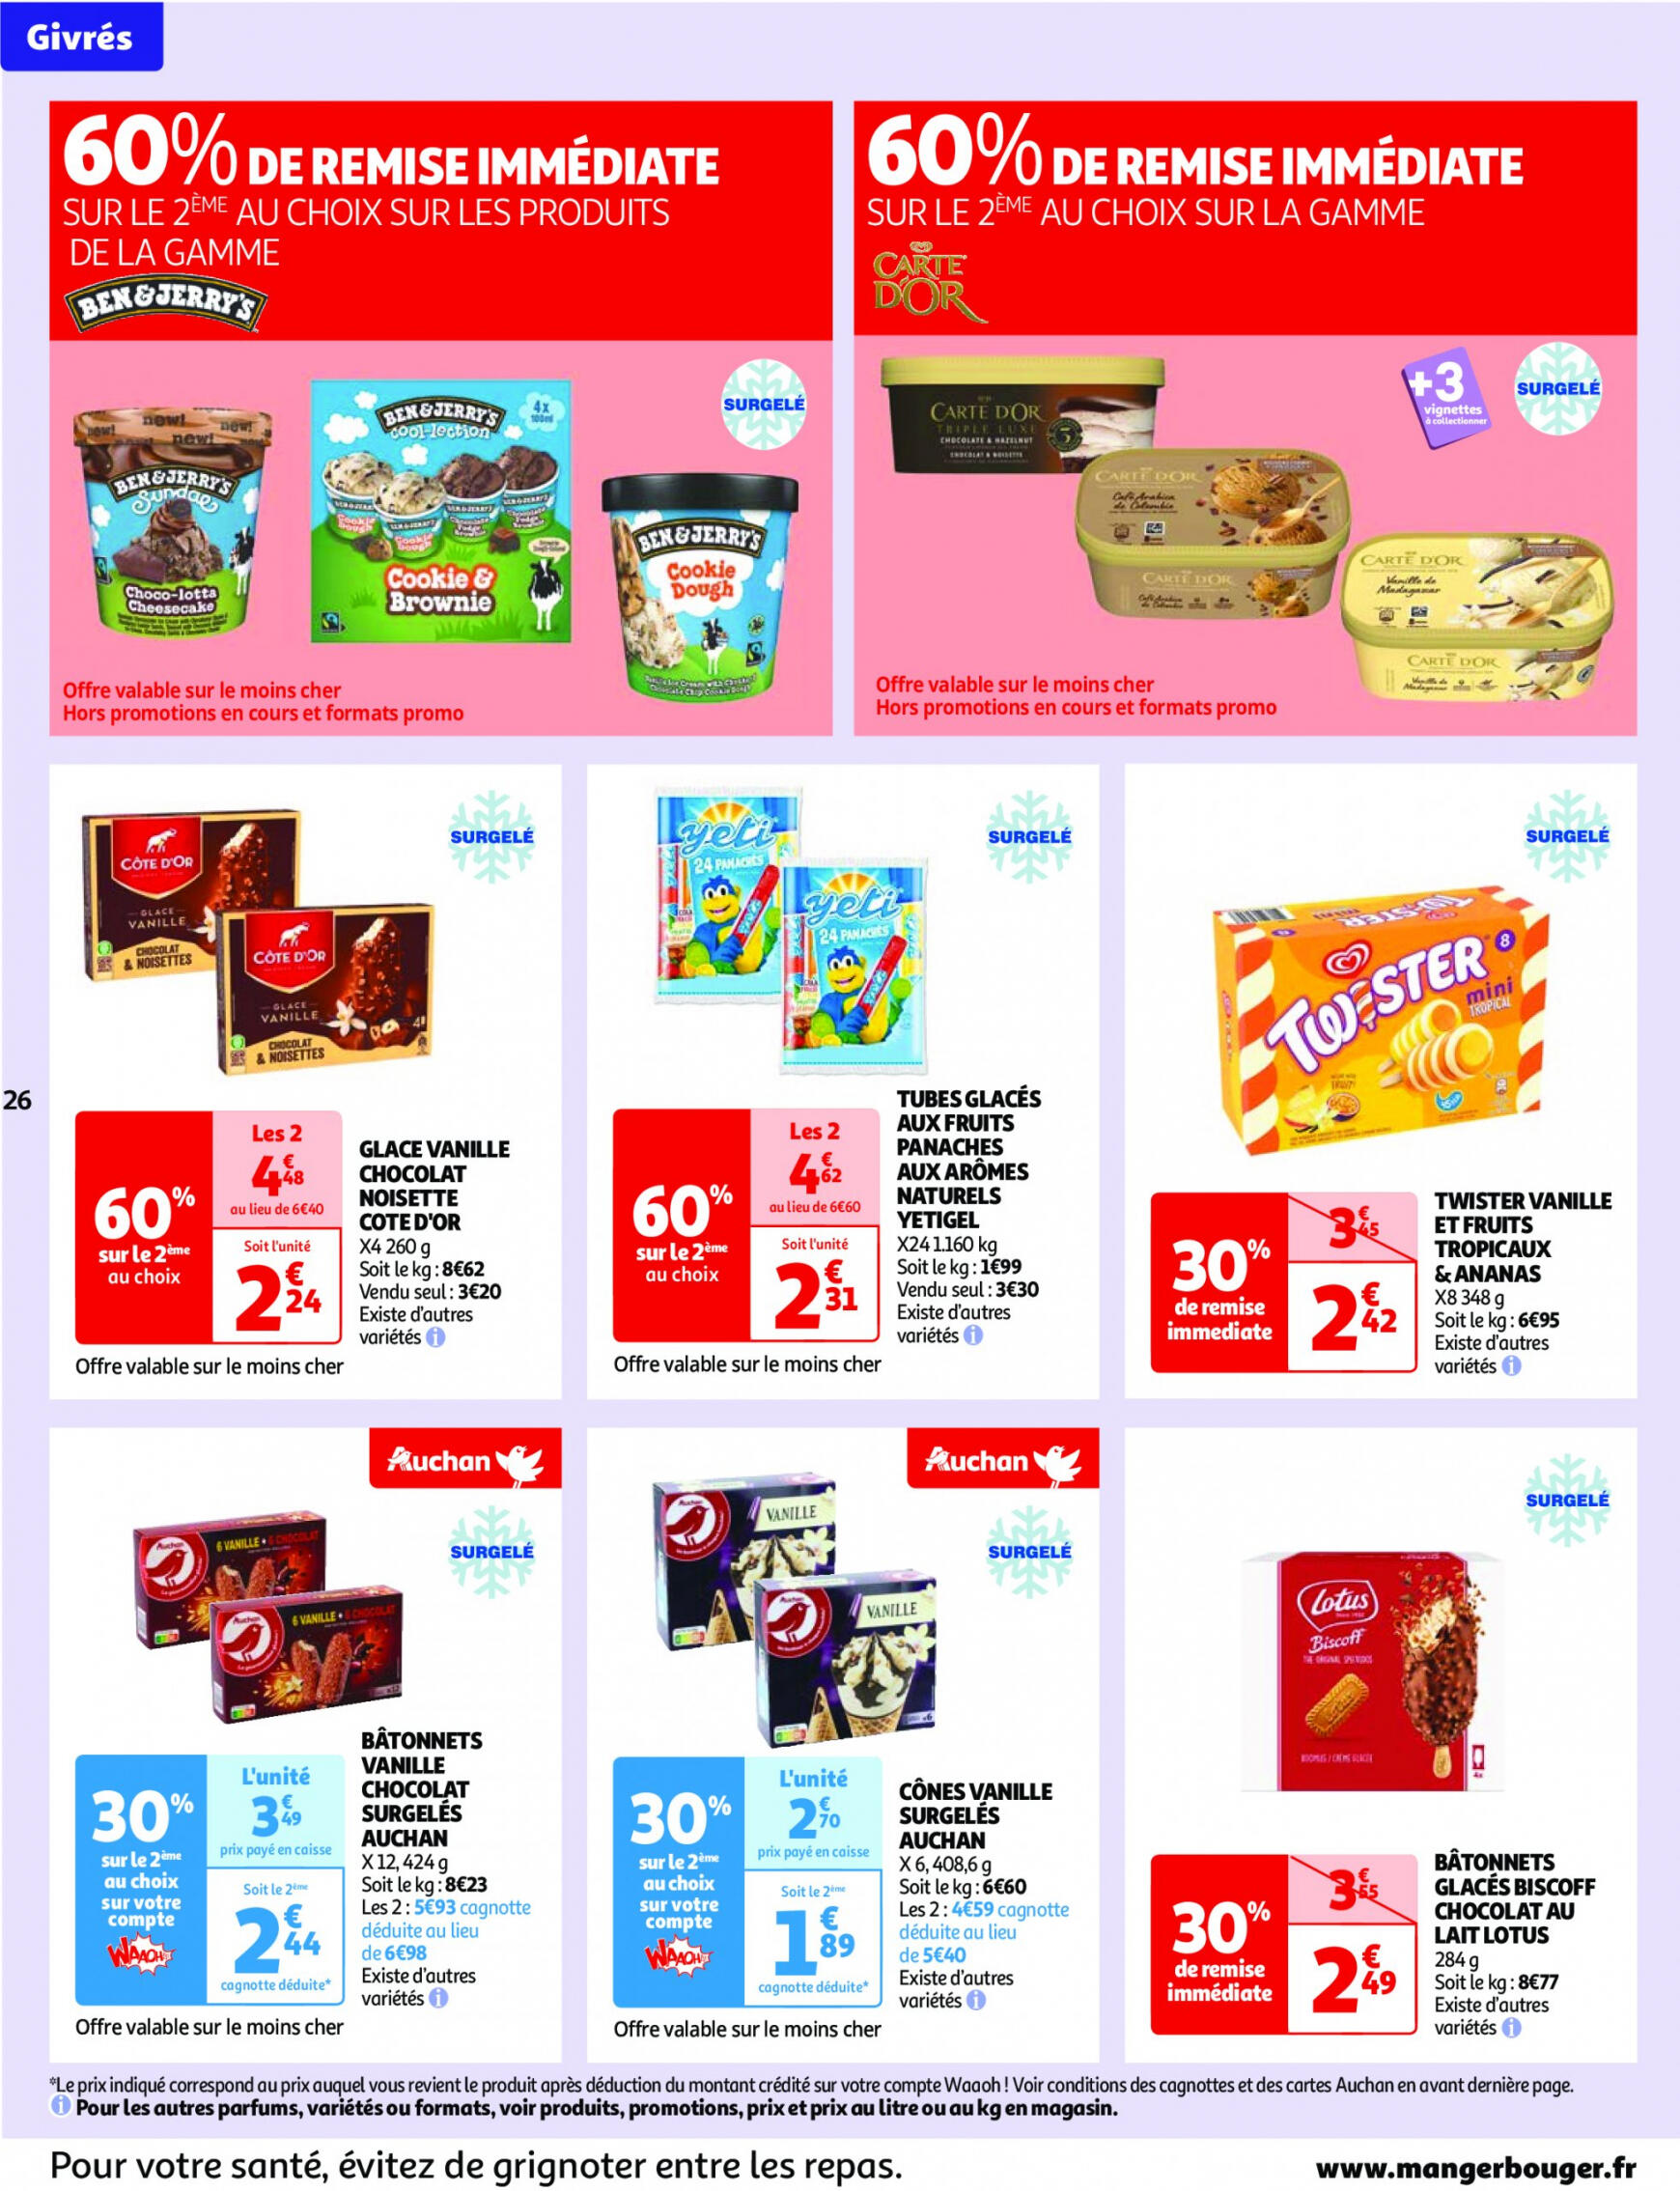 auchan - Auchan - Nos surgelés ont tout bon folder huidig 14.05. - 21.05. - page: 26